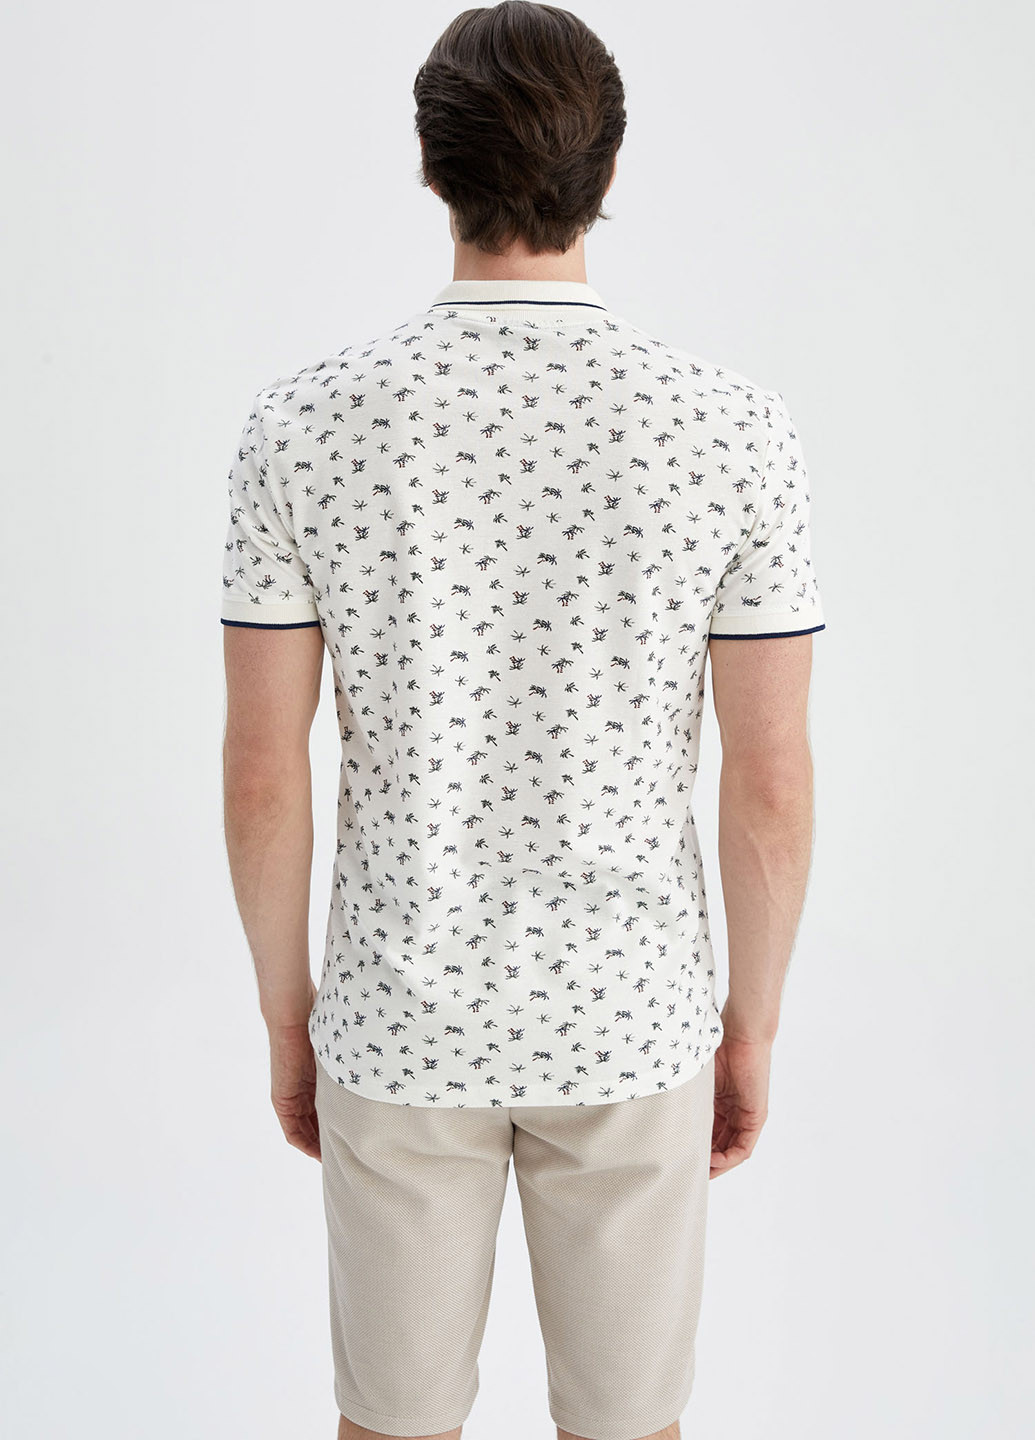 Белая футболка-поло для мужчин DeFacto с рисунком